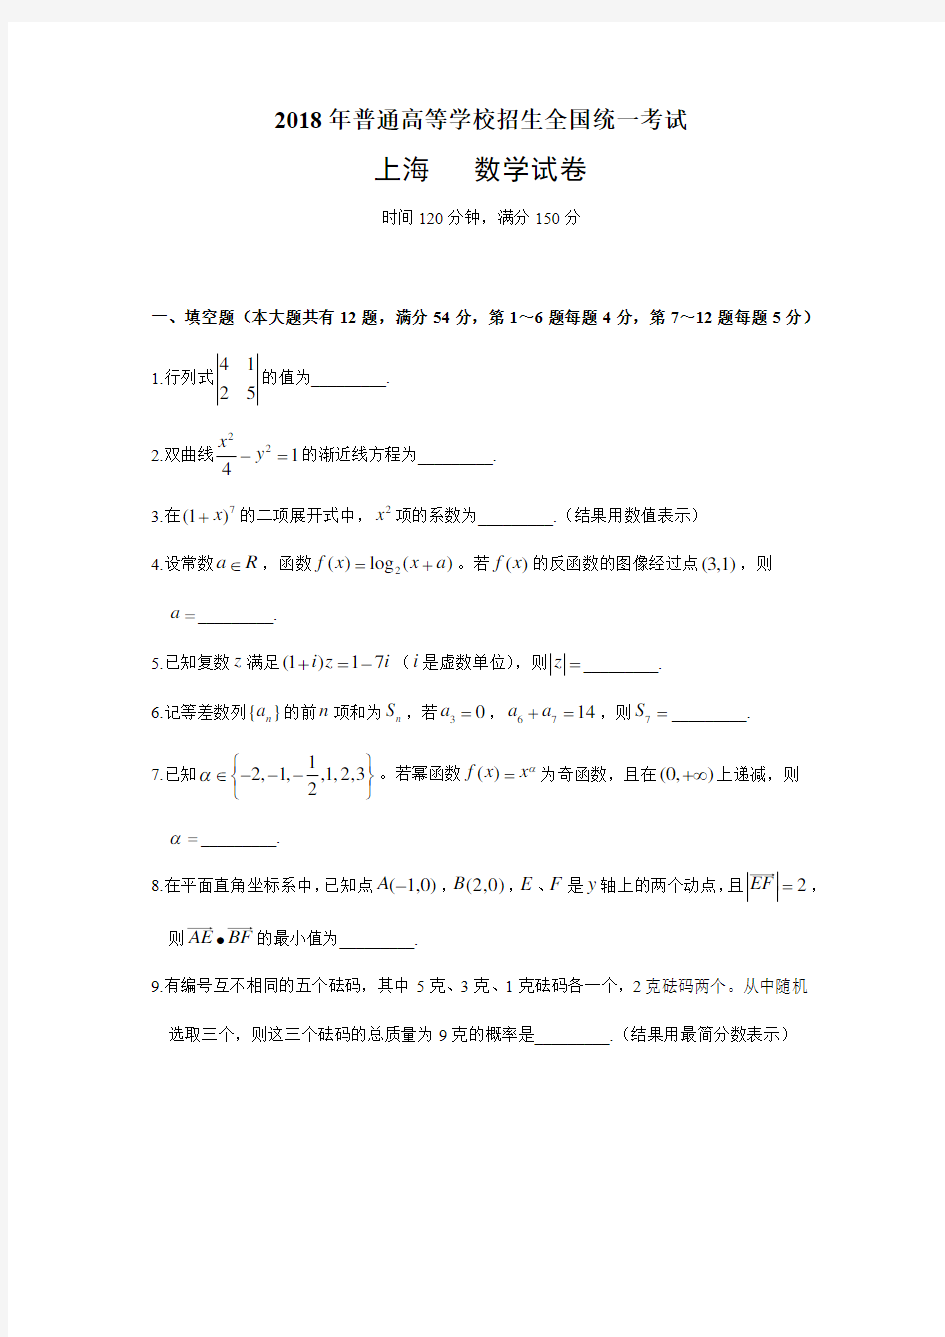 (完整)2018年上海高考数学试卷